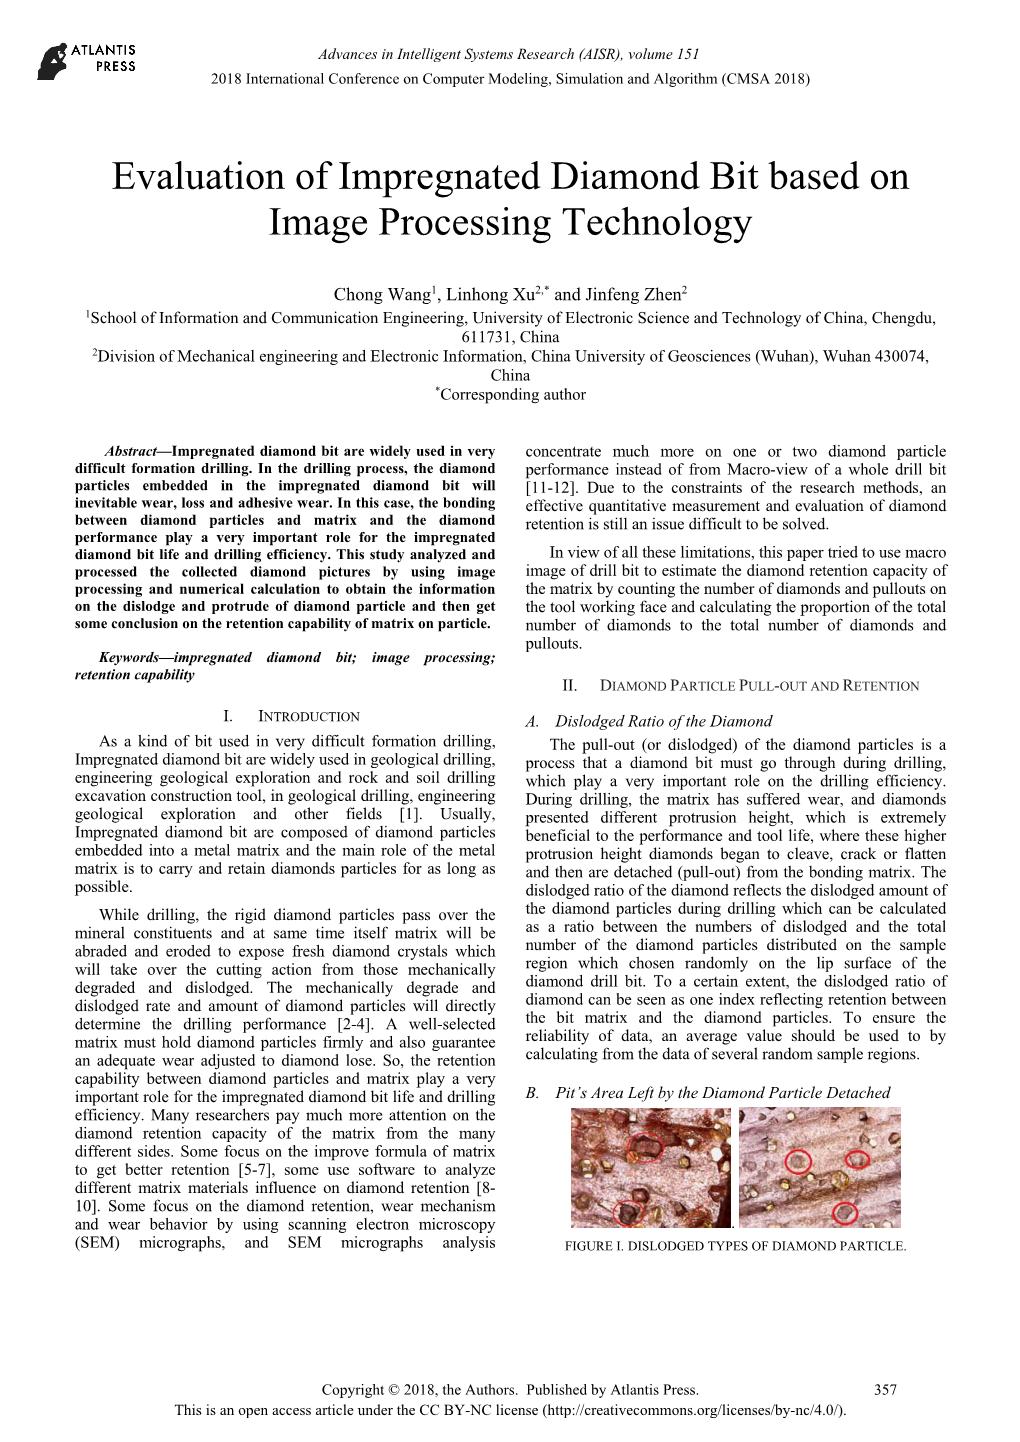 Evaluation of Impregnated Diamond Bit Based on Image Processing Technology